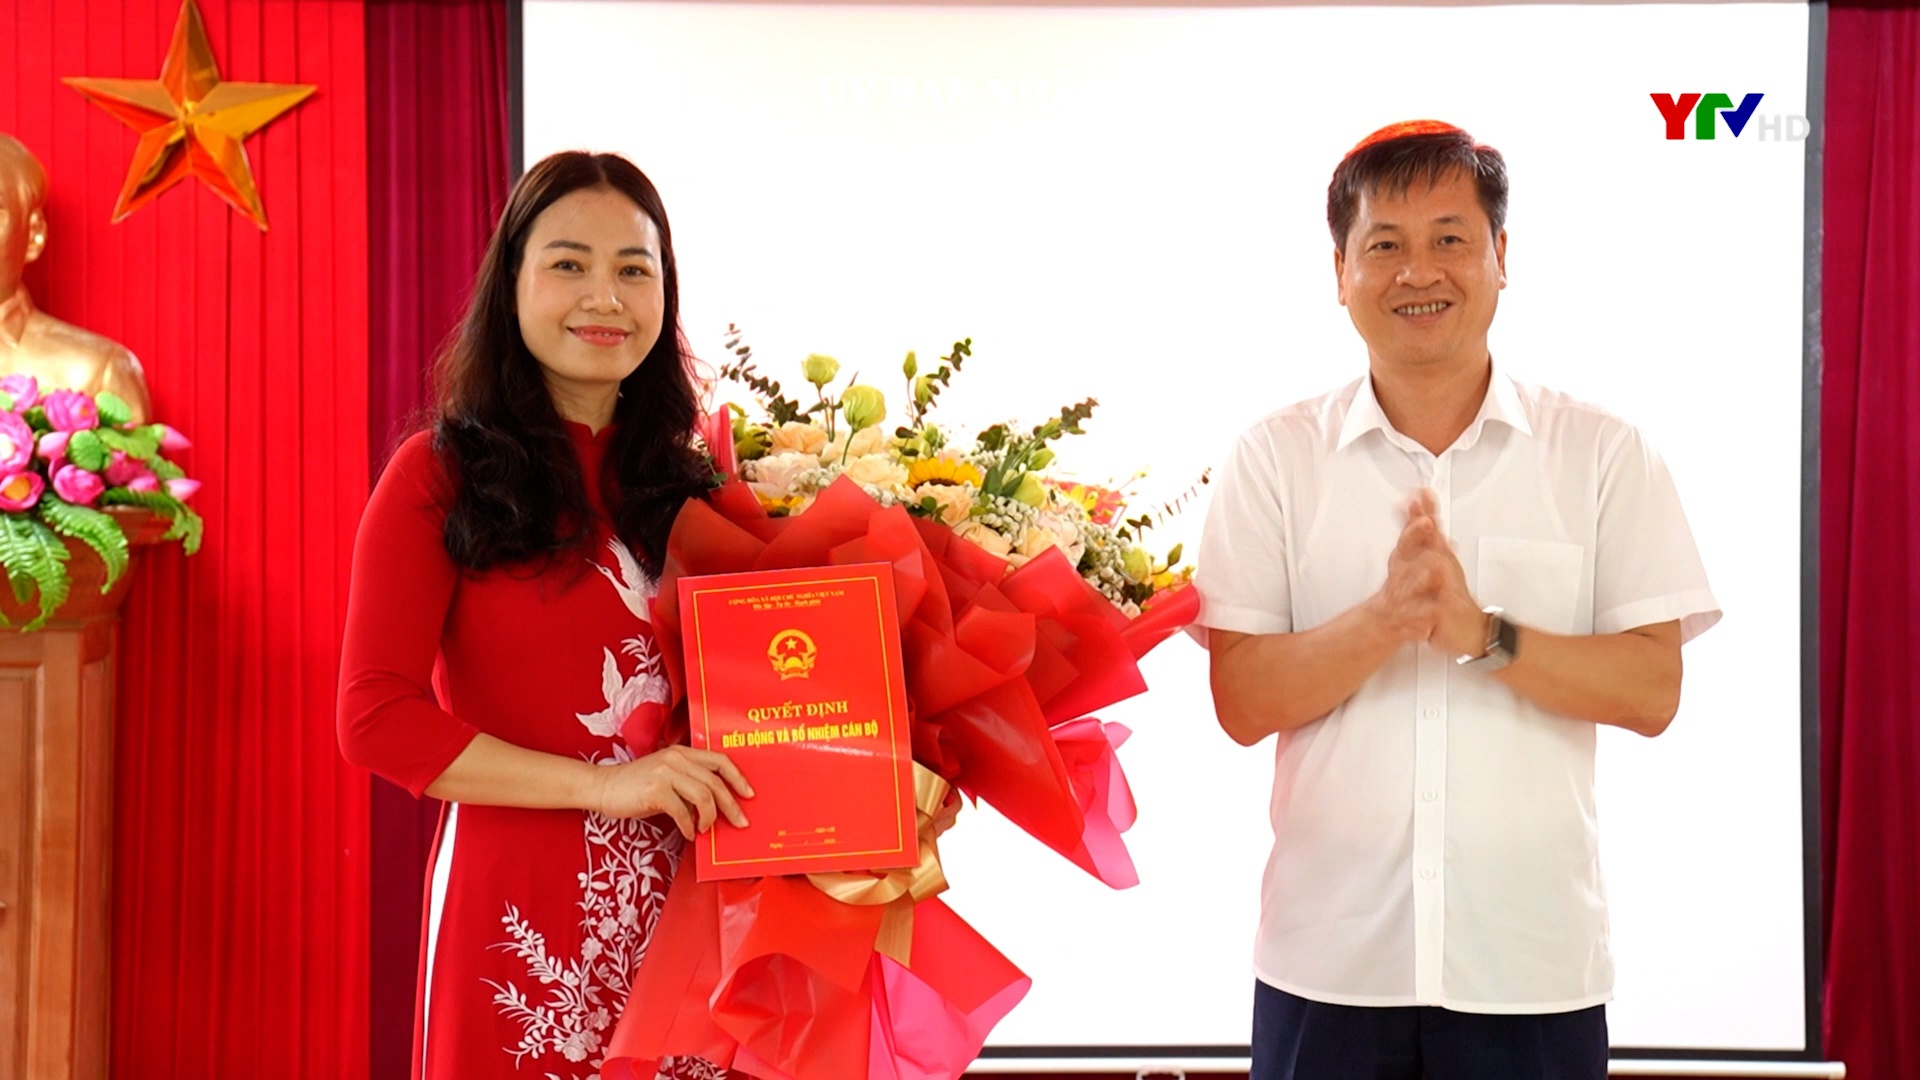 Phó Chủ tịch UBND huyện Văn Yên được điều động, bổ nhiệm giữ chức Phó Giám đốc Sở Tư pháp tỉnh Yên Bái